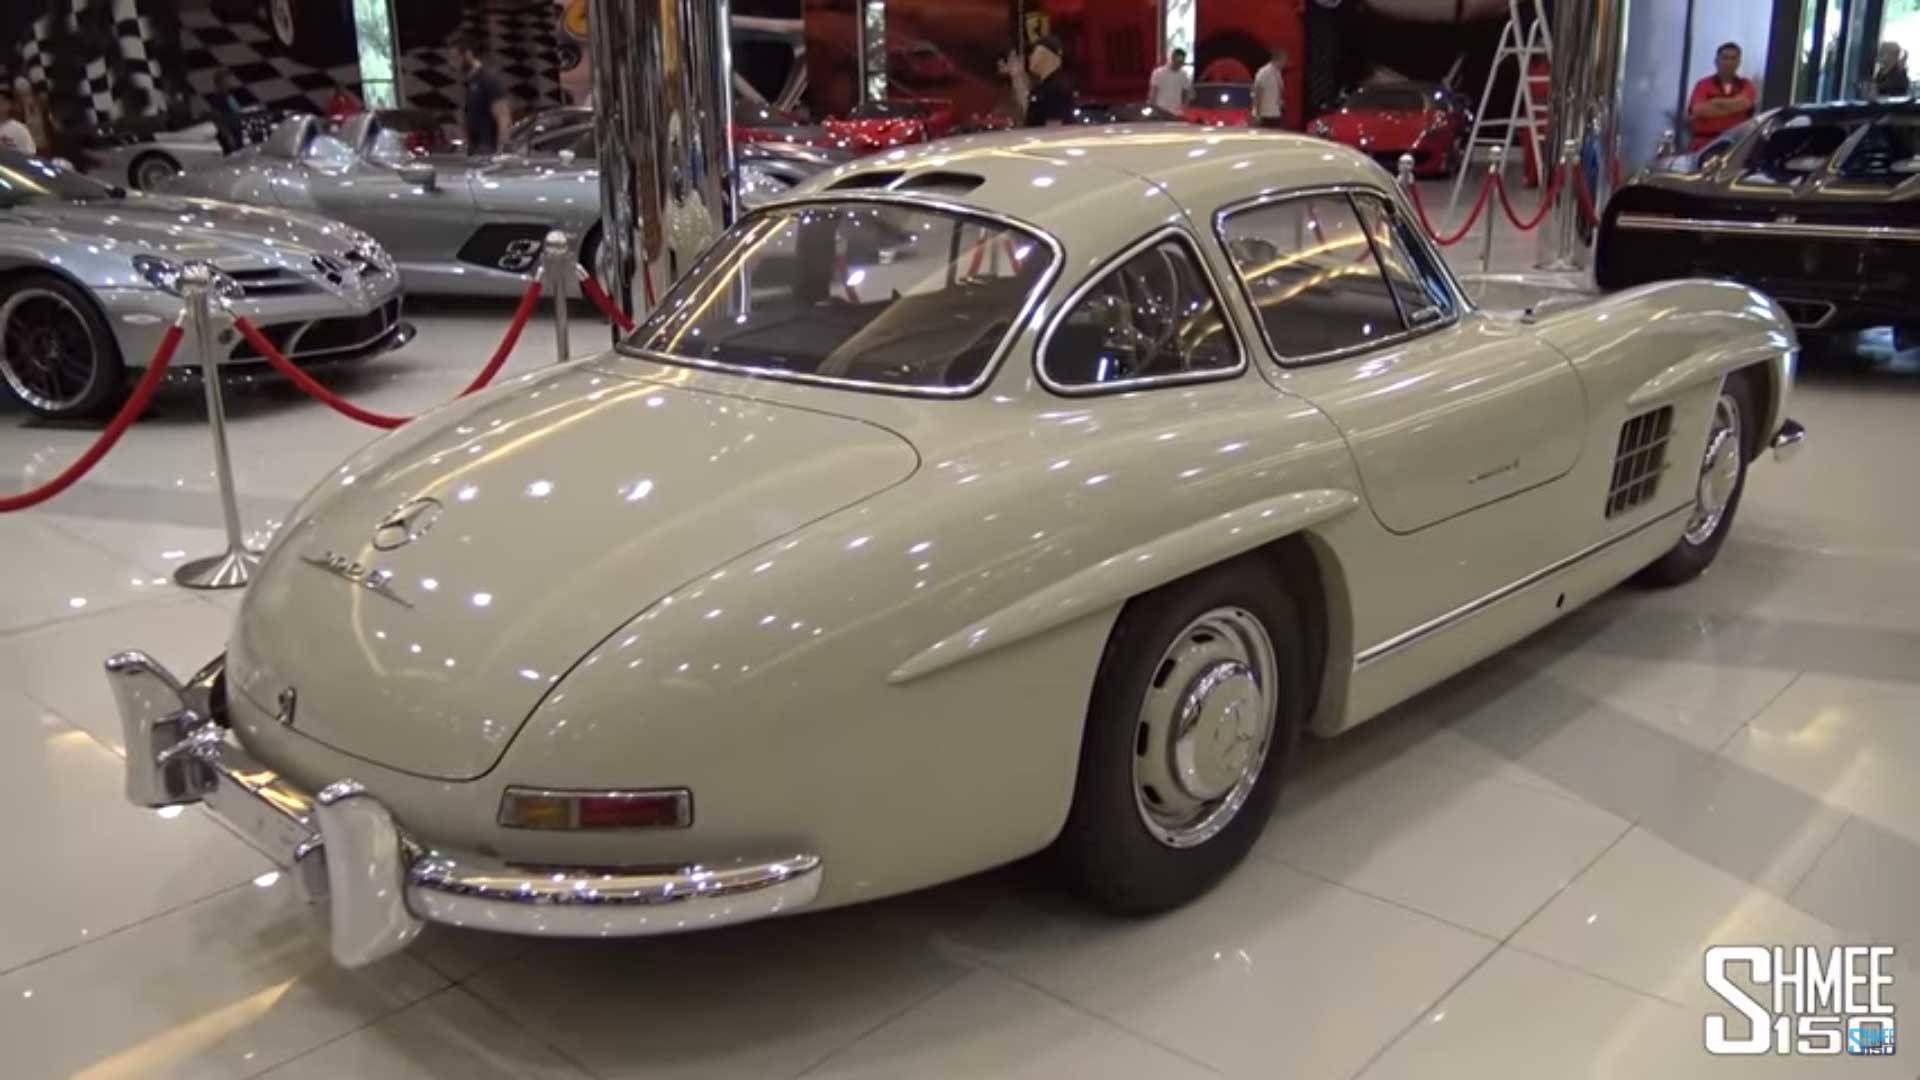 “بالفيديو والصور” جولة في متحف سيارات أبو ظبي للسيارات الخارقة والنادرة